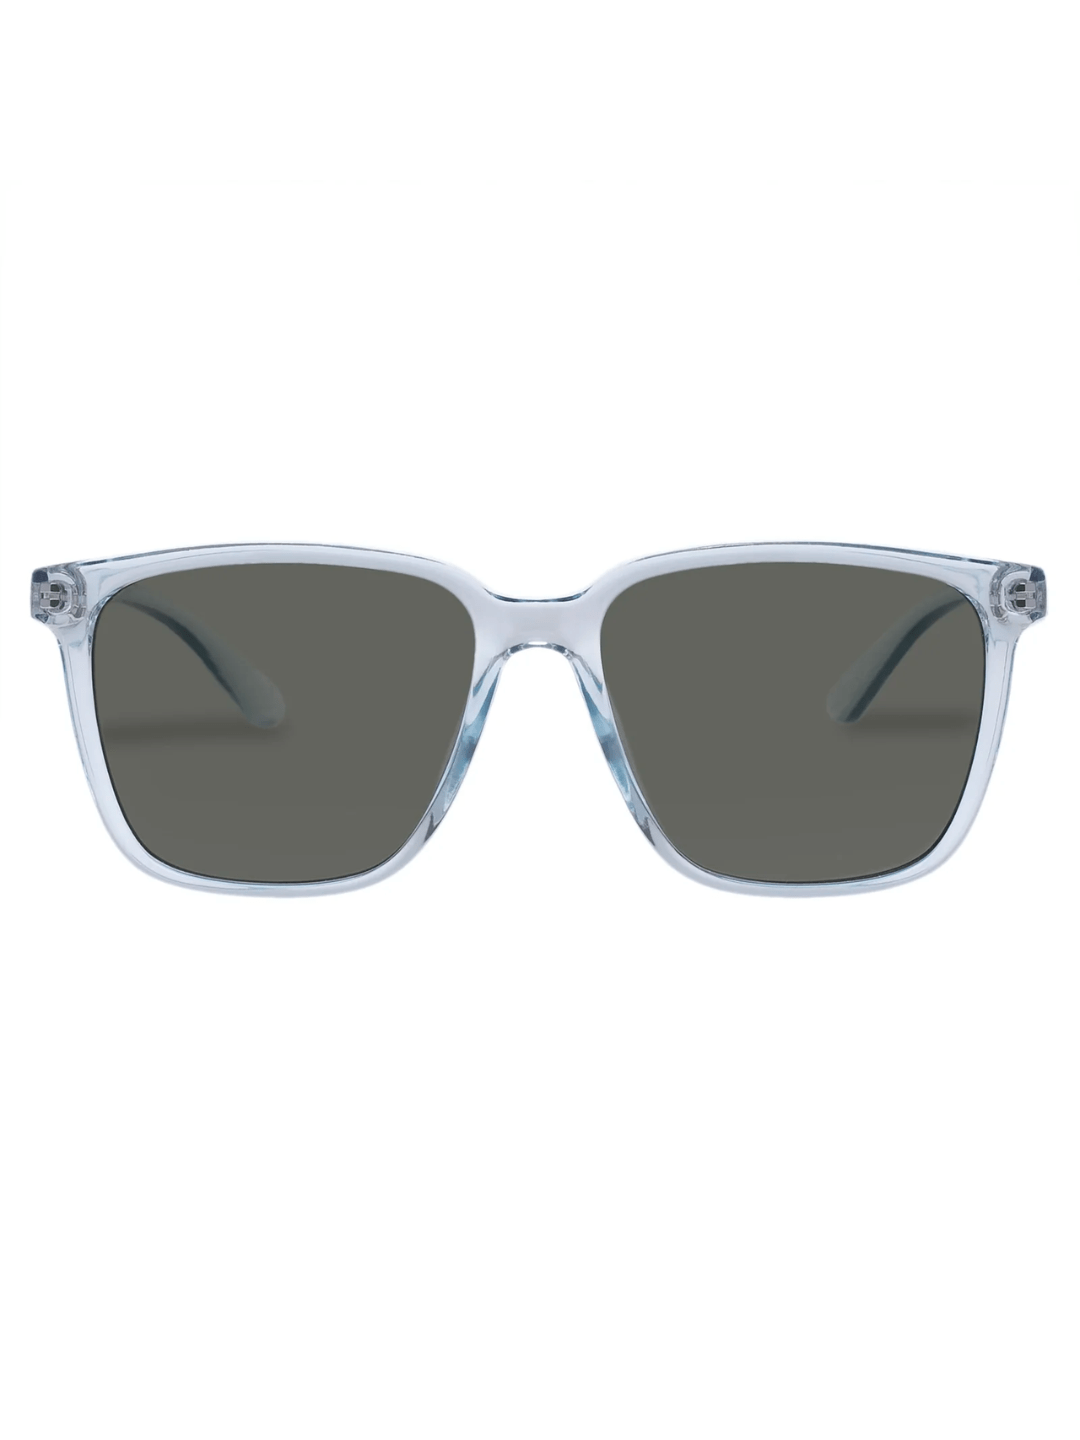 Le Specs Sunglasses Fair Game in Mist